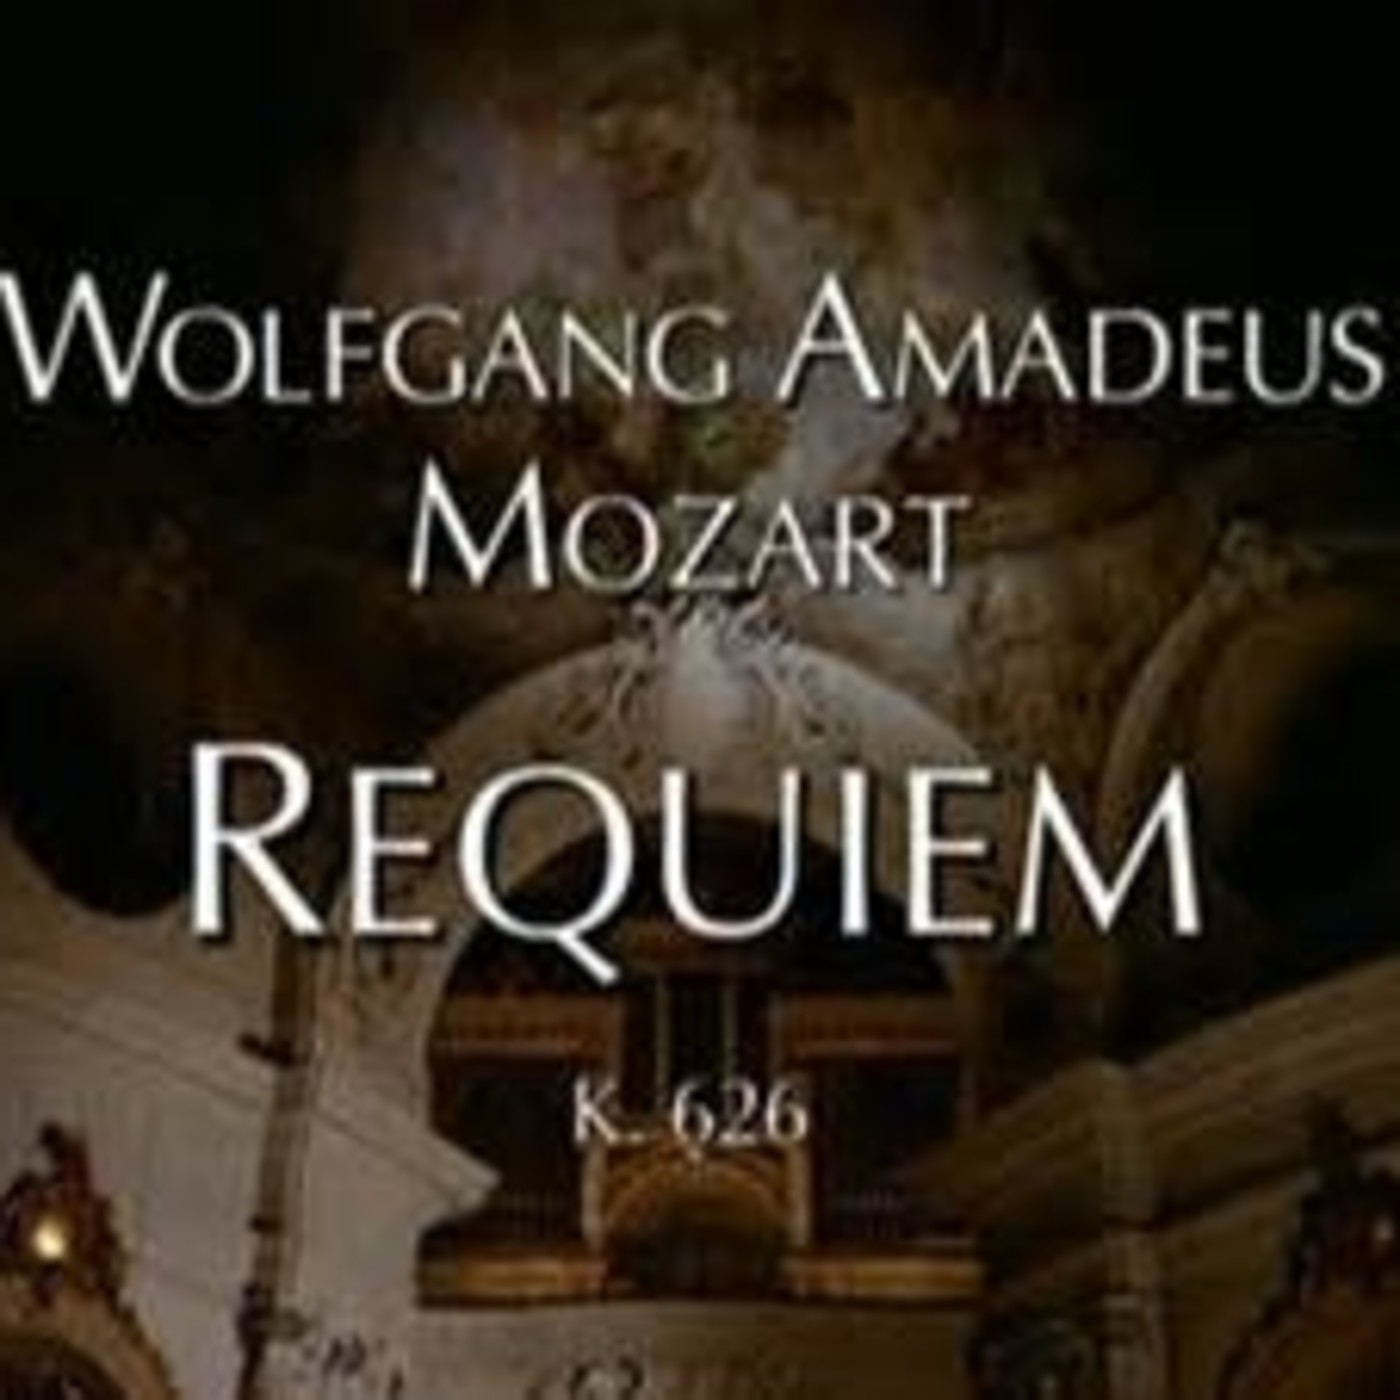 История произведения реквием. Моцарт. Реквием. Wolfgang Amadeus Mozart - Requiem.